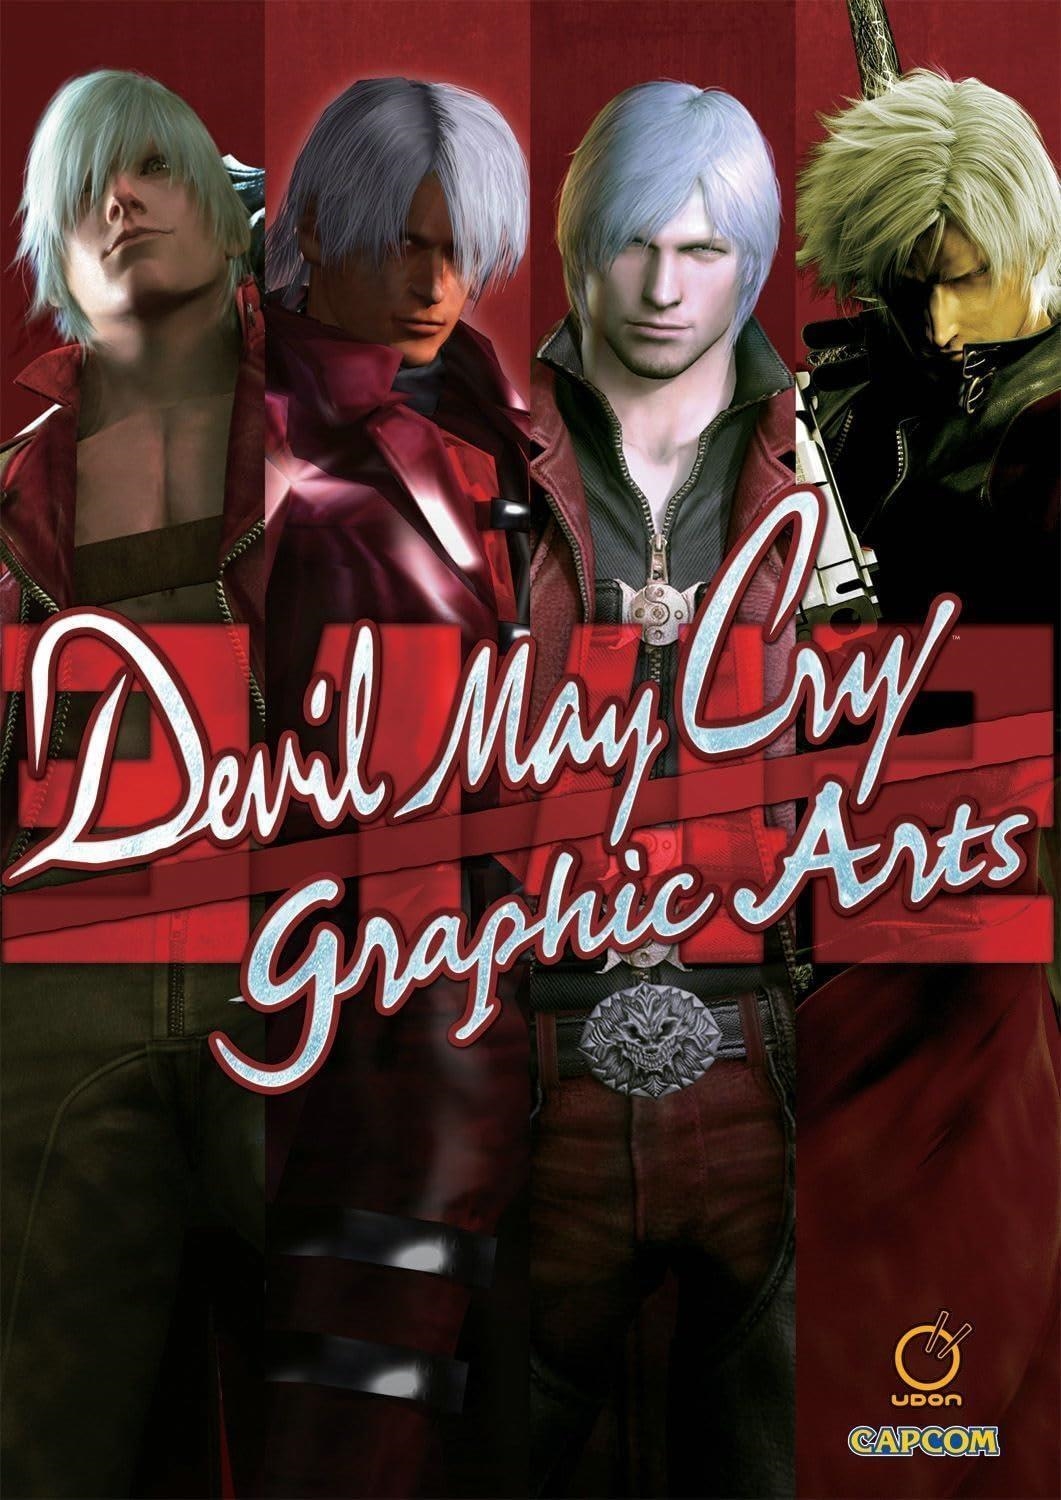 LIbri UK/US Capcom - Devil May Cry 3142 Graphic Arts Hardcover NUOVO SIGILLATO, EDIZIONE DEL 13/04/2021 SUBITO DISPONIBILE